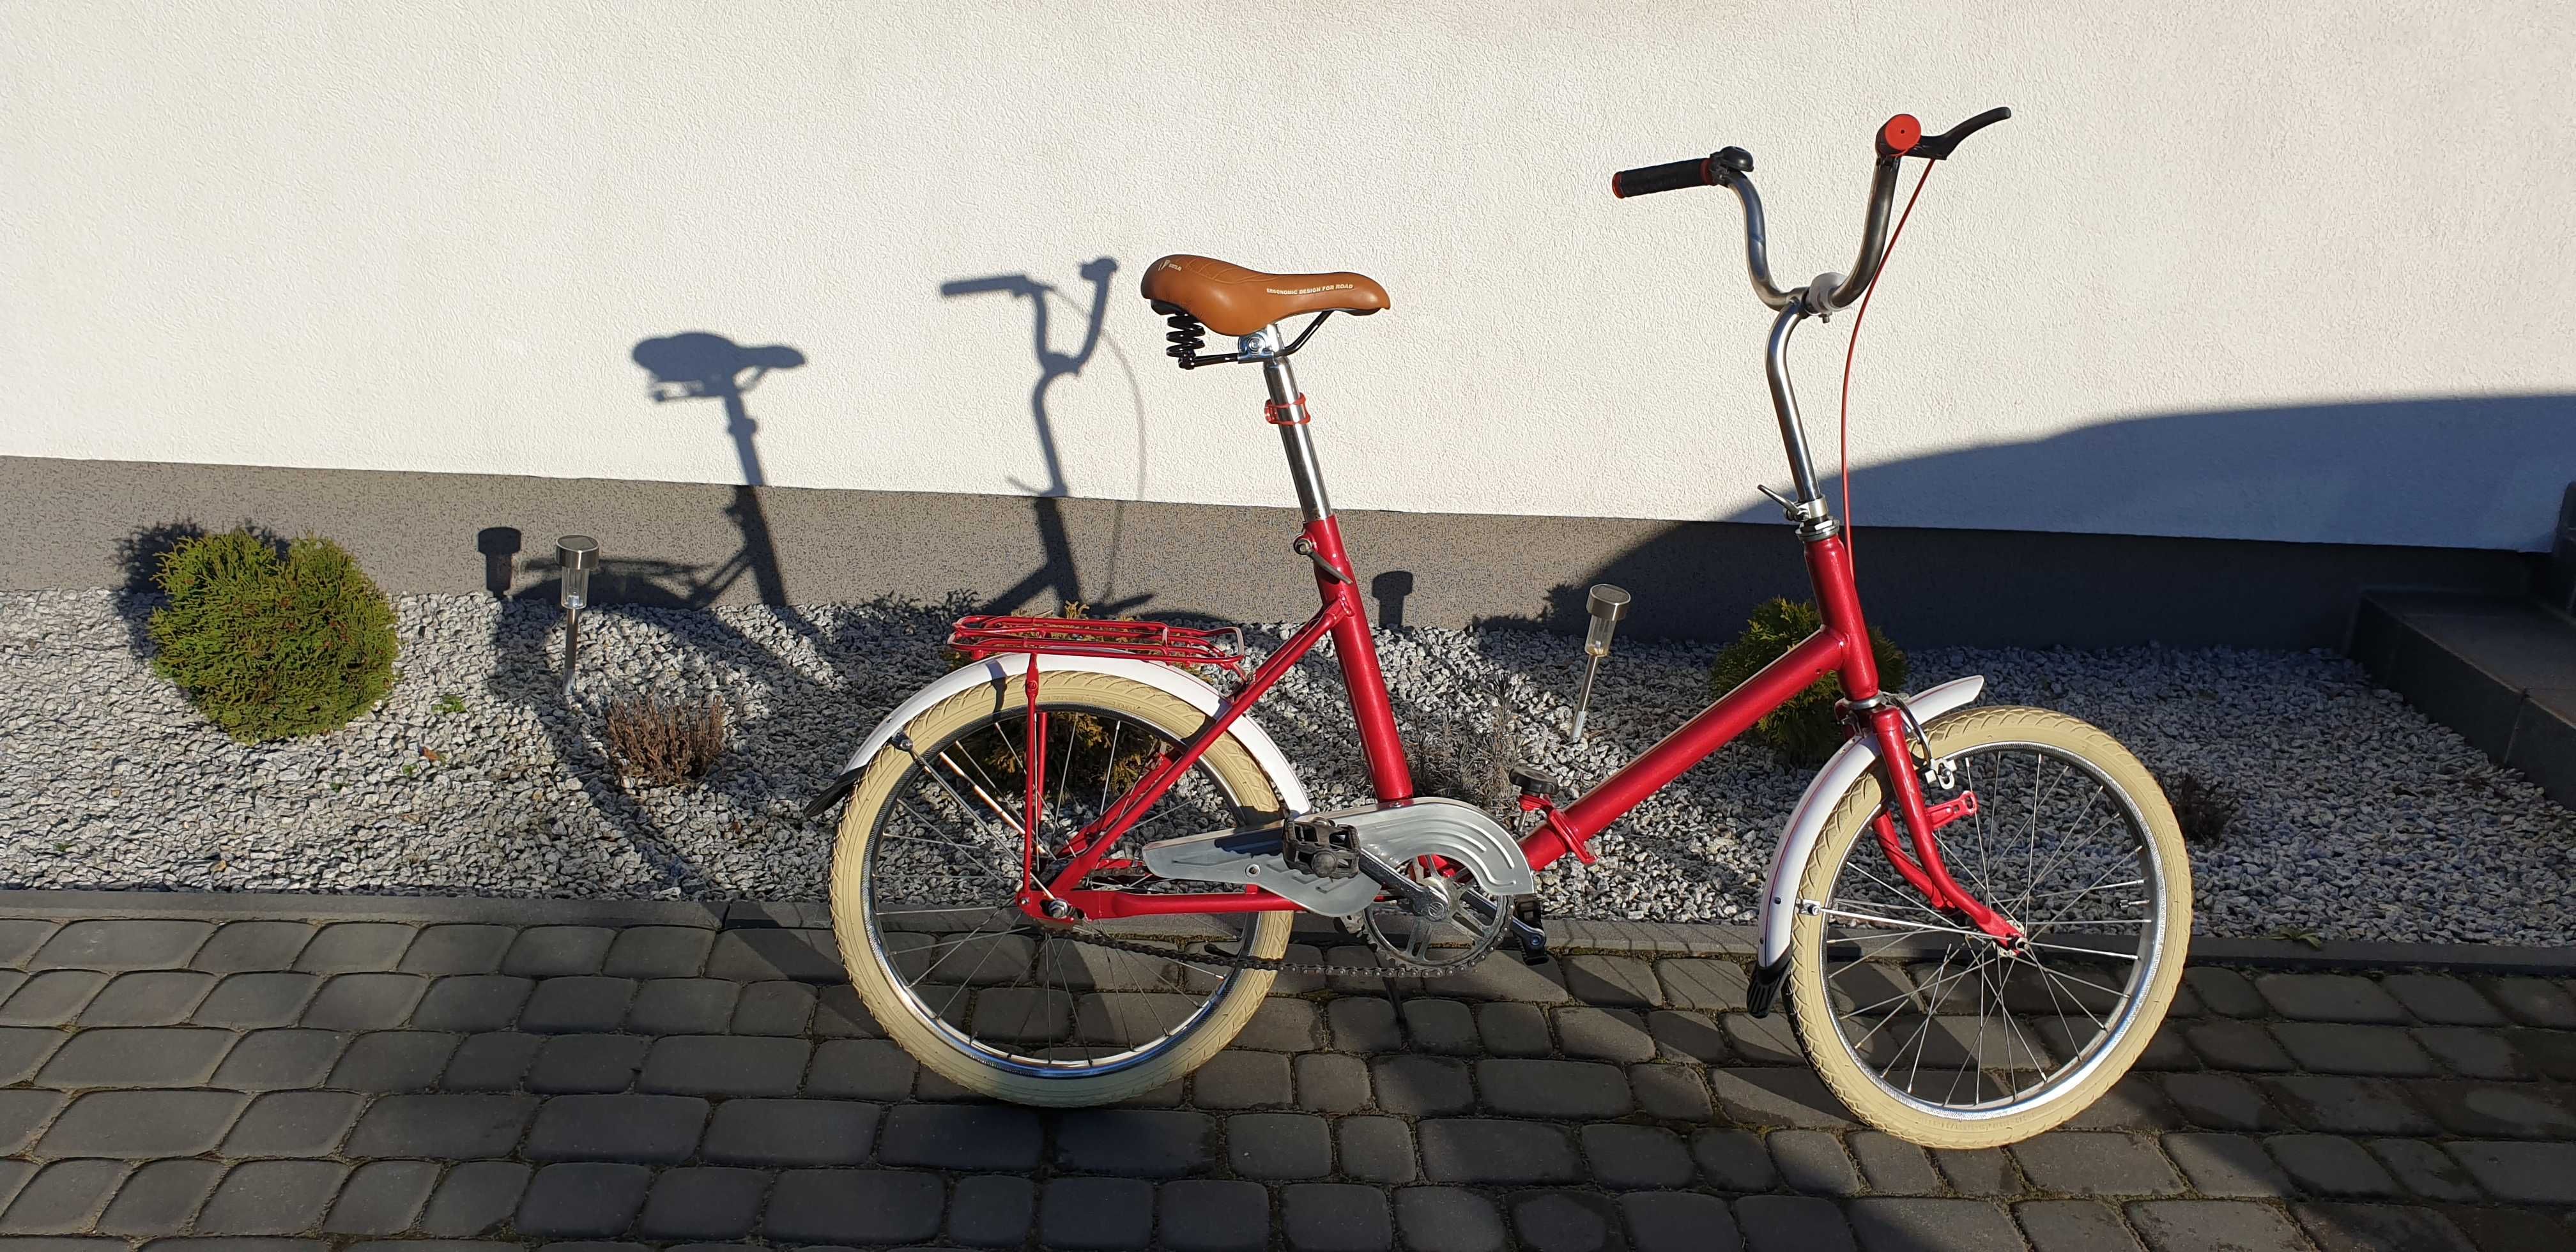 Rower składak czerwony odnowiony! Niemiecka rama dla konesera.